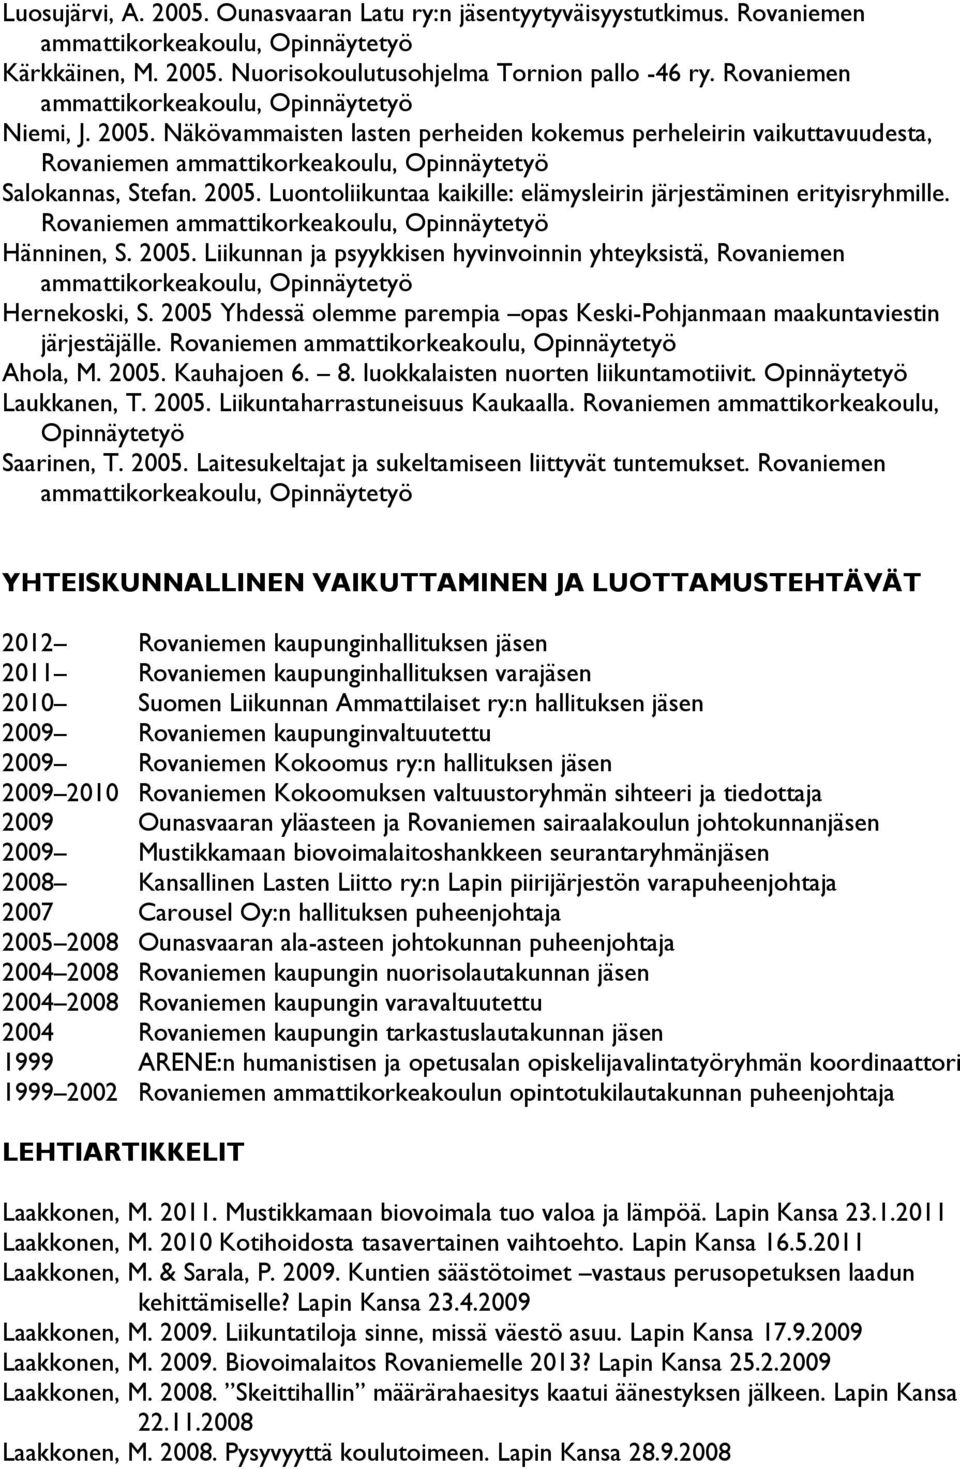 2005 Yhdessä olemme parempia opas Keski-Pohjanmaan maakuntaviestin järjestäjälle. Rovaniemen Ahola, M. 2005. Kauhajoen 6. 8. luokkalaisten nuorten liikuntamotiivit. Opinnäytetyö Laukkanen, T. 2005. Liikuntaharrastuneisuus Kaukaalla.